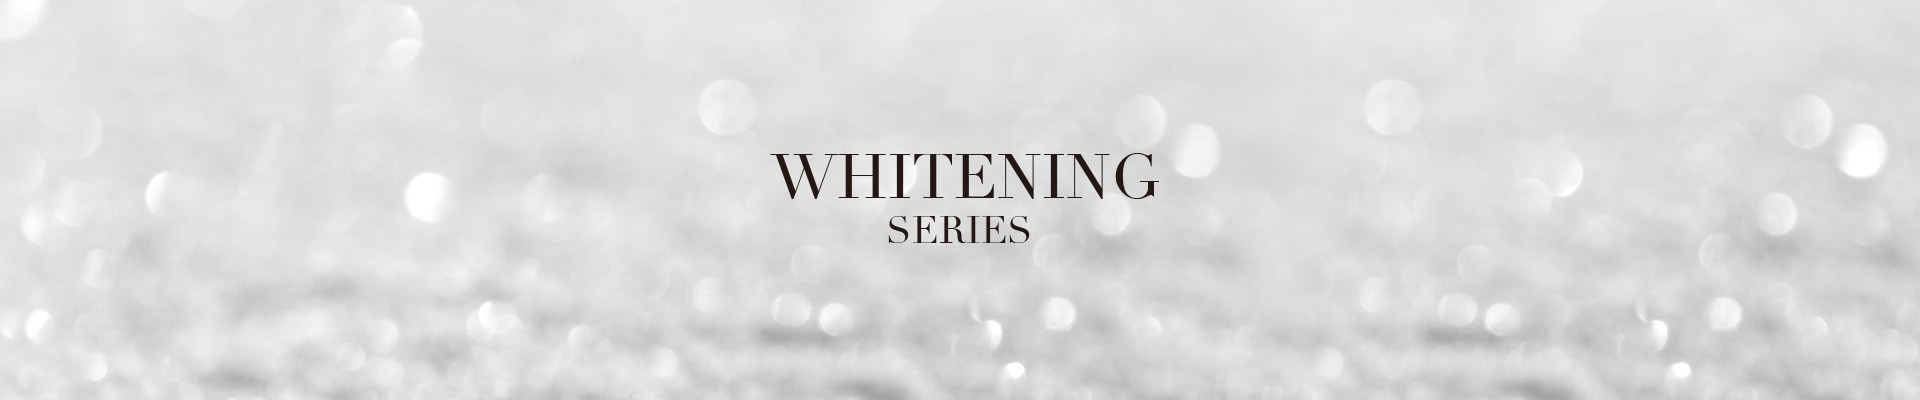 Whitening Series